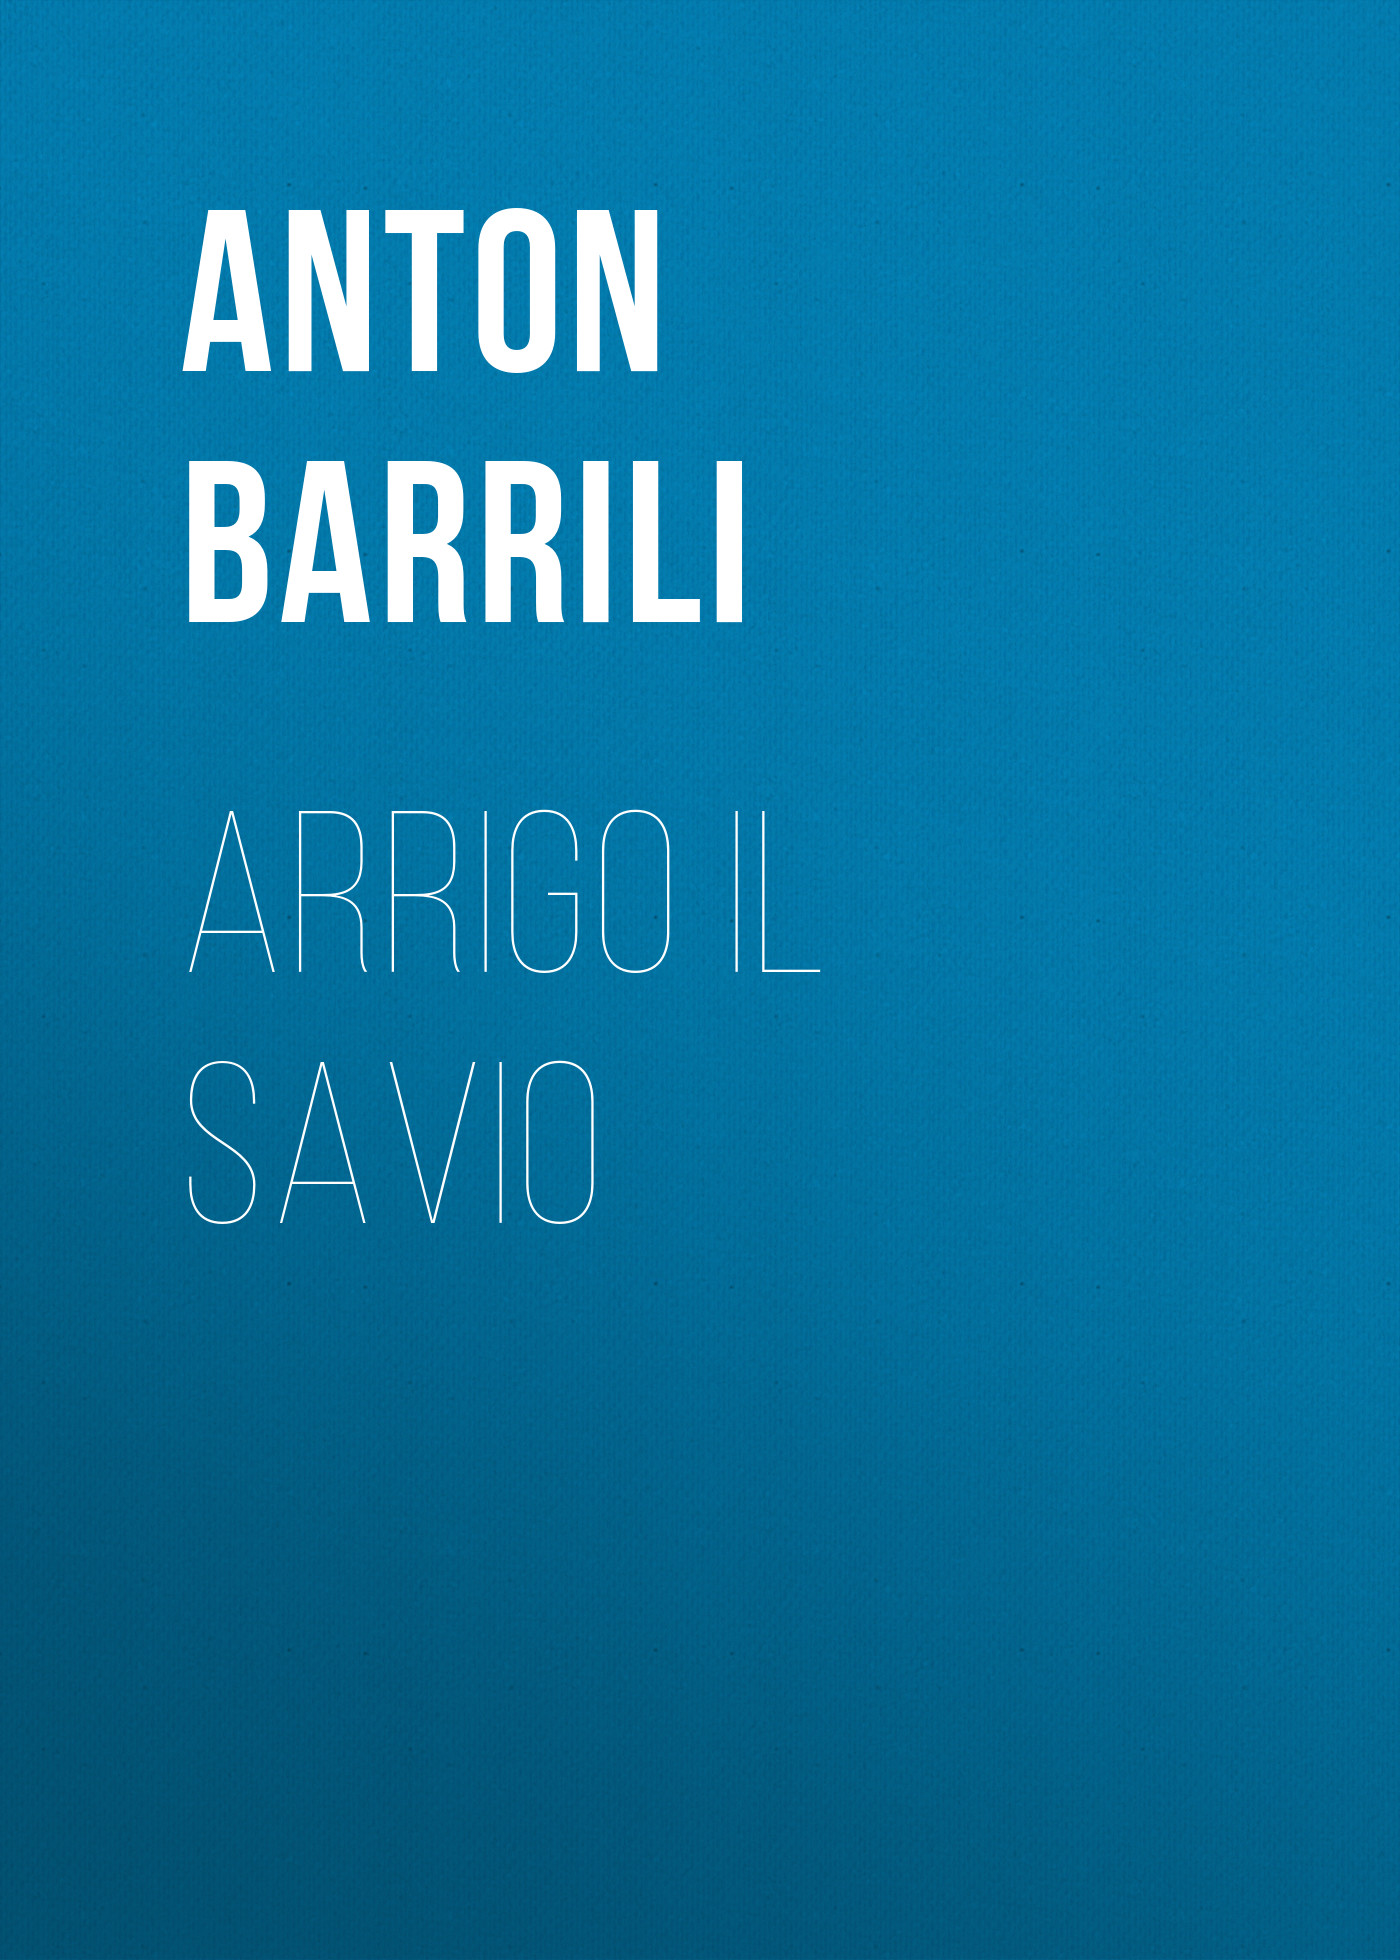 Книга Arrigo il savio из серии , созданная Anton Barrili, может относится к жанру Зарубежная старинная литература, Зарубежная классика. Стоимость электронной книги Arrigo il savio с идентификатором 24177356 составляет 0 руб.